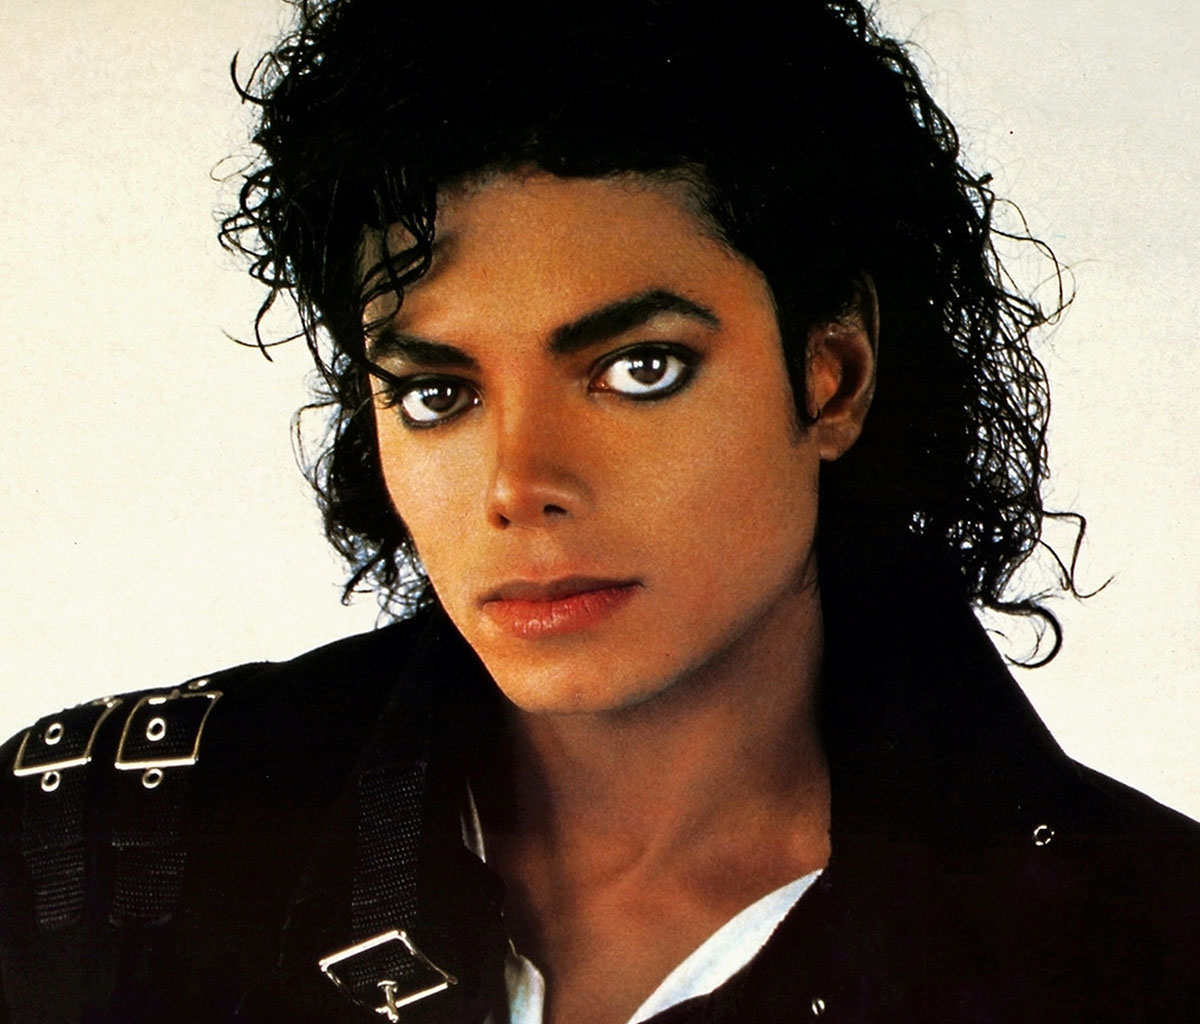 El ídolo de millones, Michael Jackson